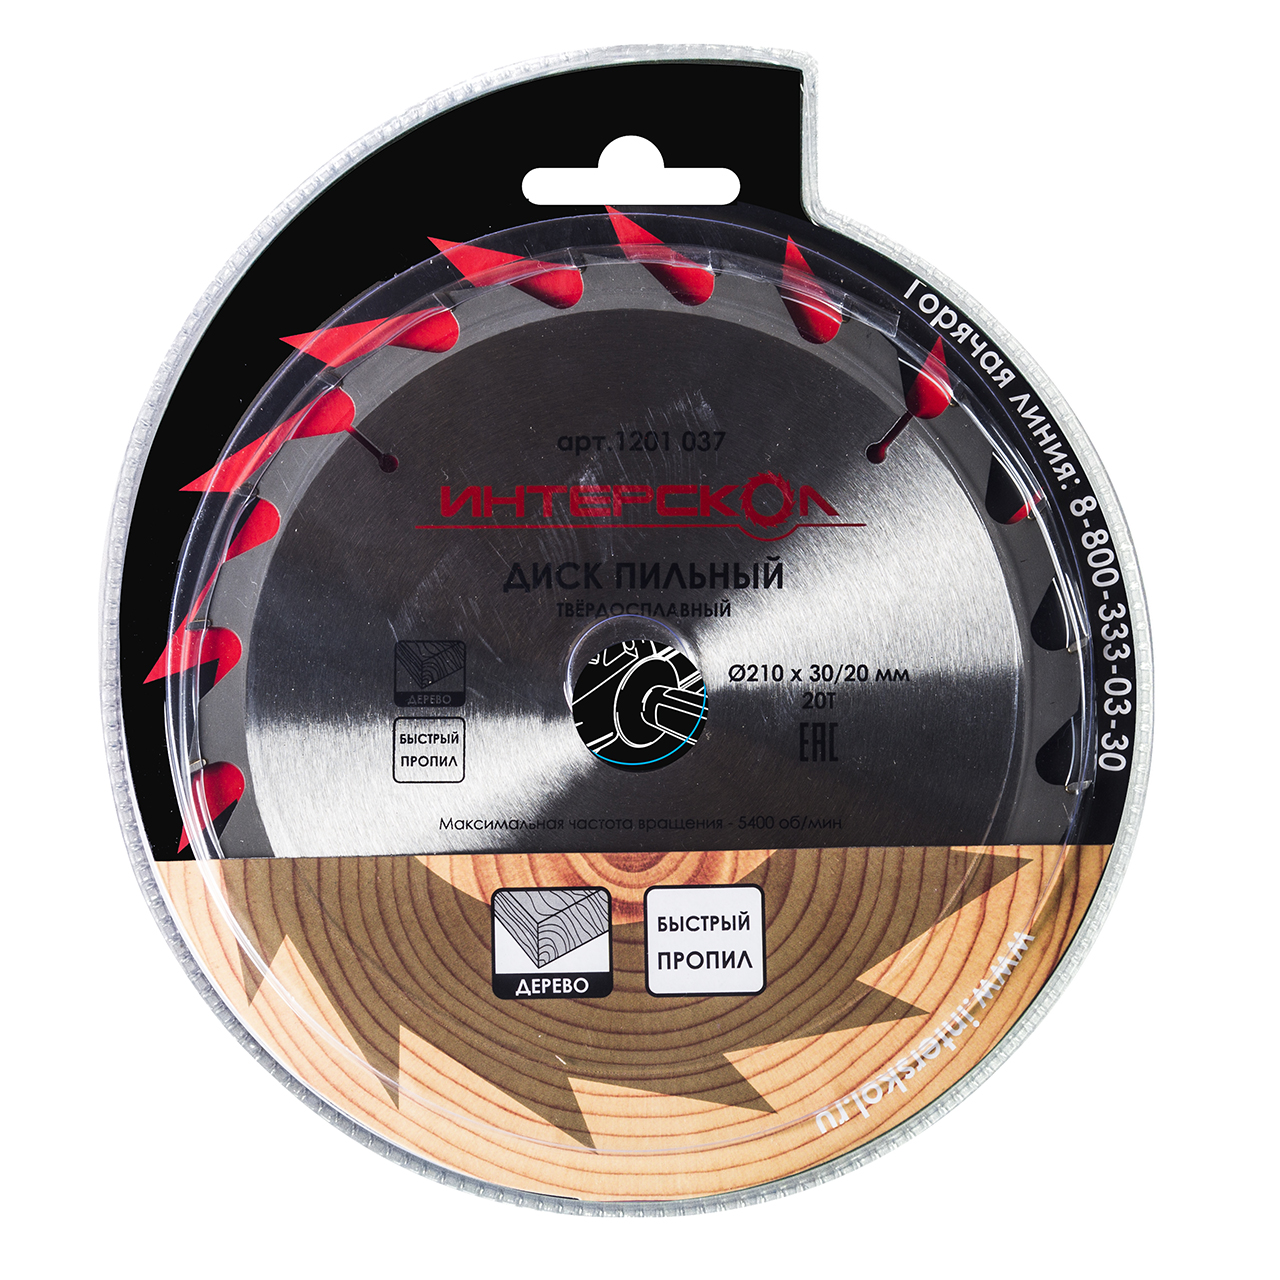 Диски пильные для дисковых и торцовочных пил ИНТЕРСКОЛ Пильный диск по дереву (быстрый пропил) 210 мм